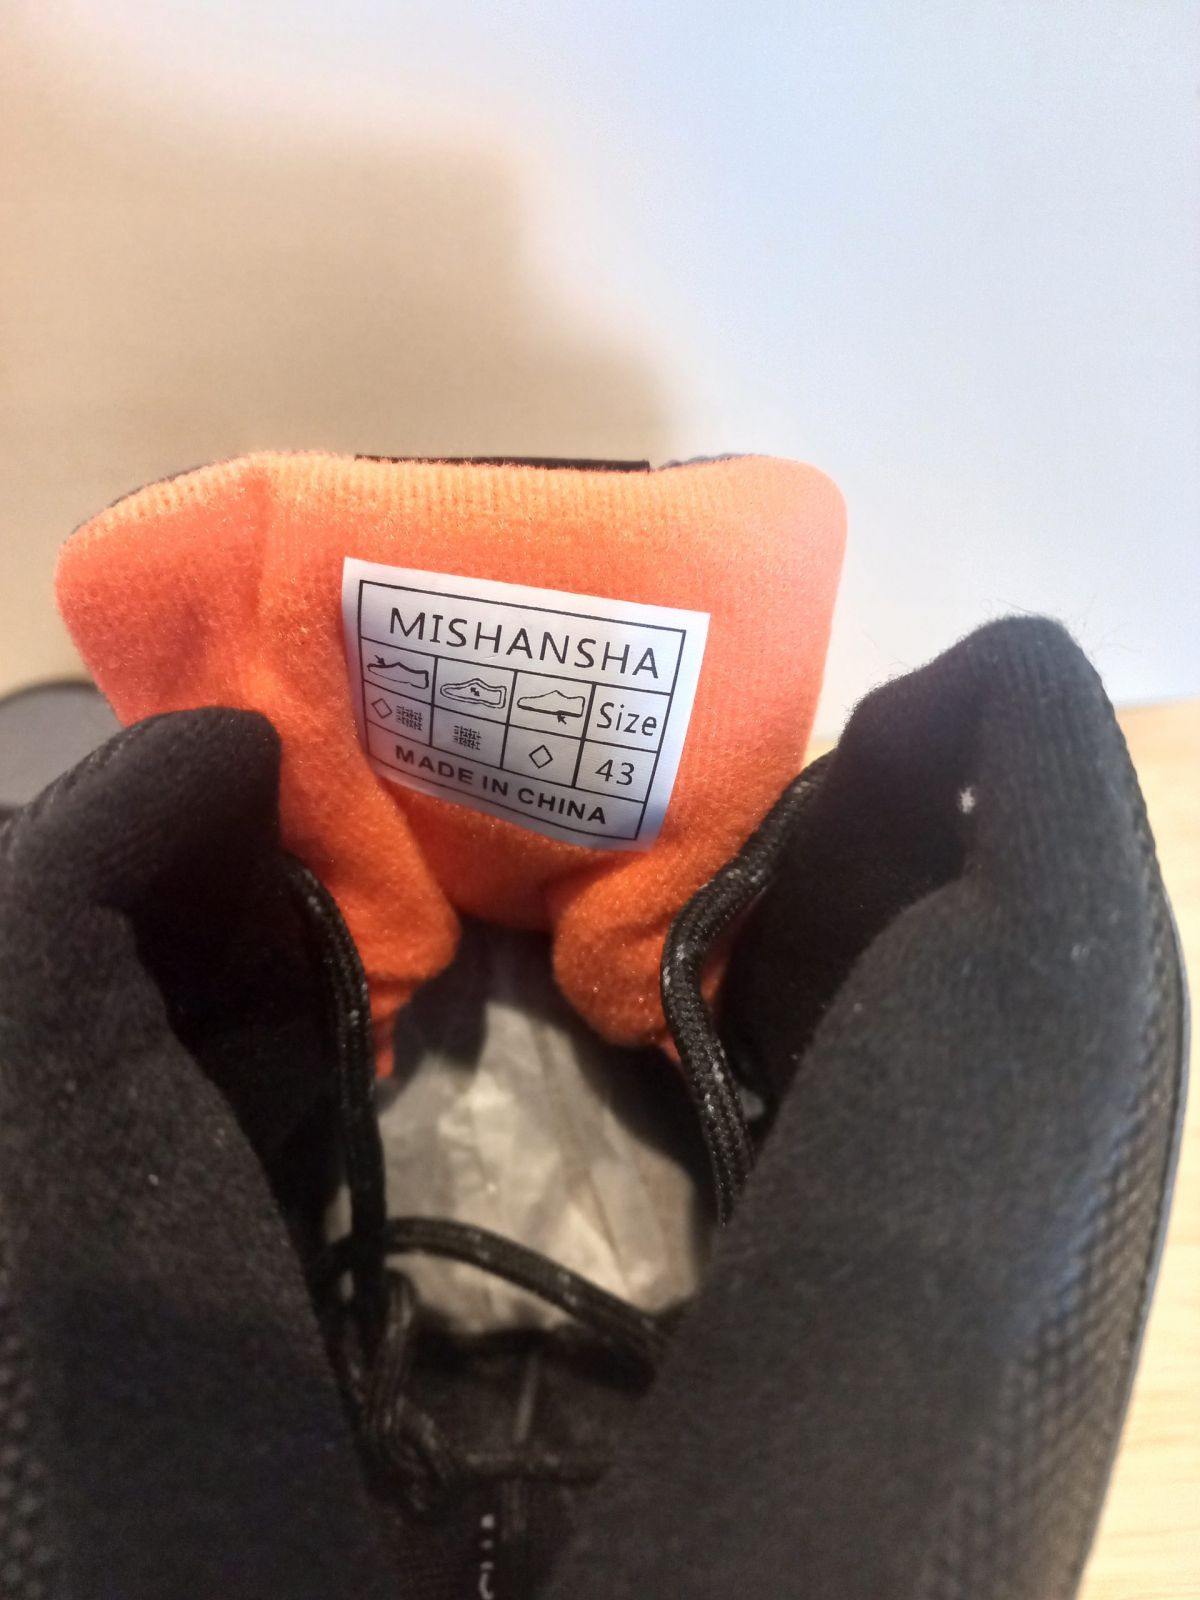 Походная обувь для мужчин и женщин Mishansha размер 43